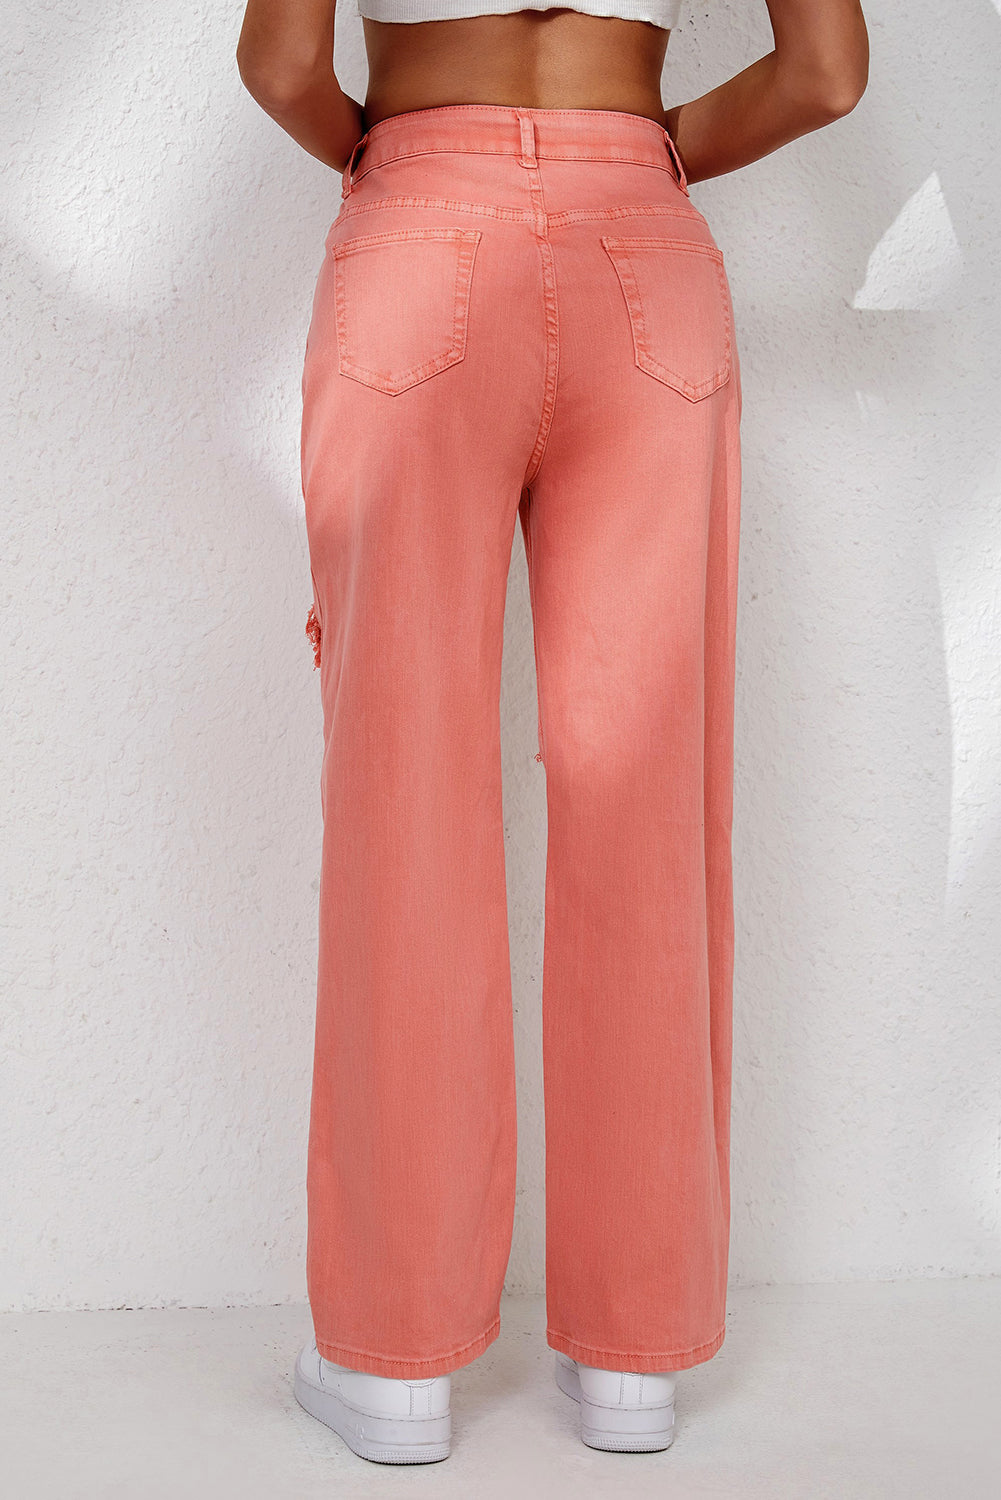 Jeans rosa con tasca a gamba dritta strappata a vita alta